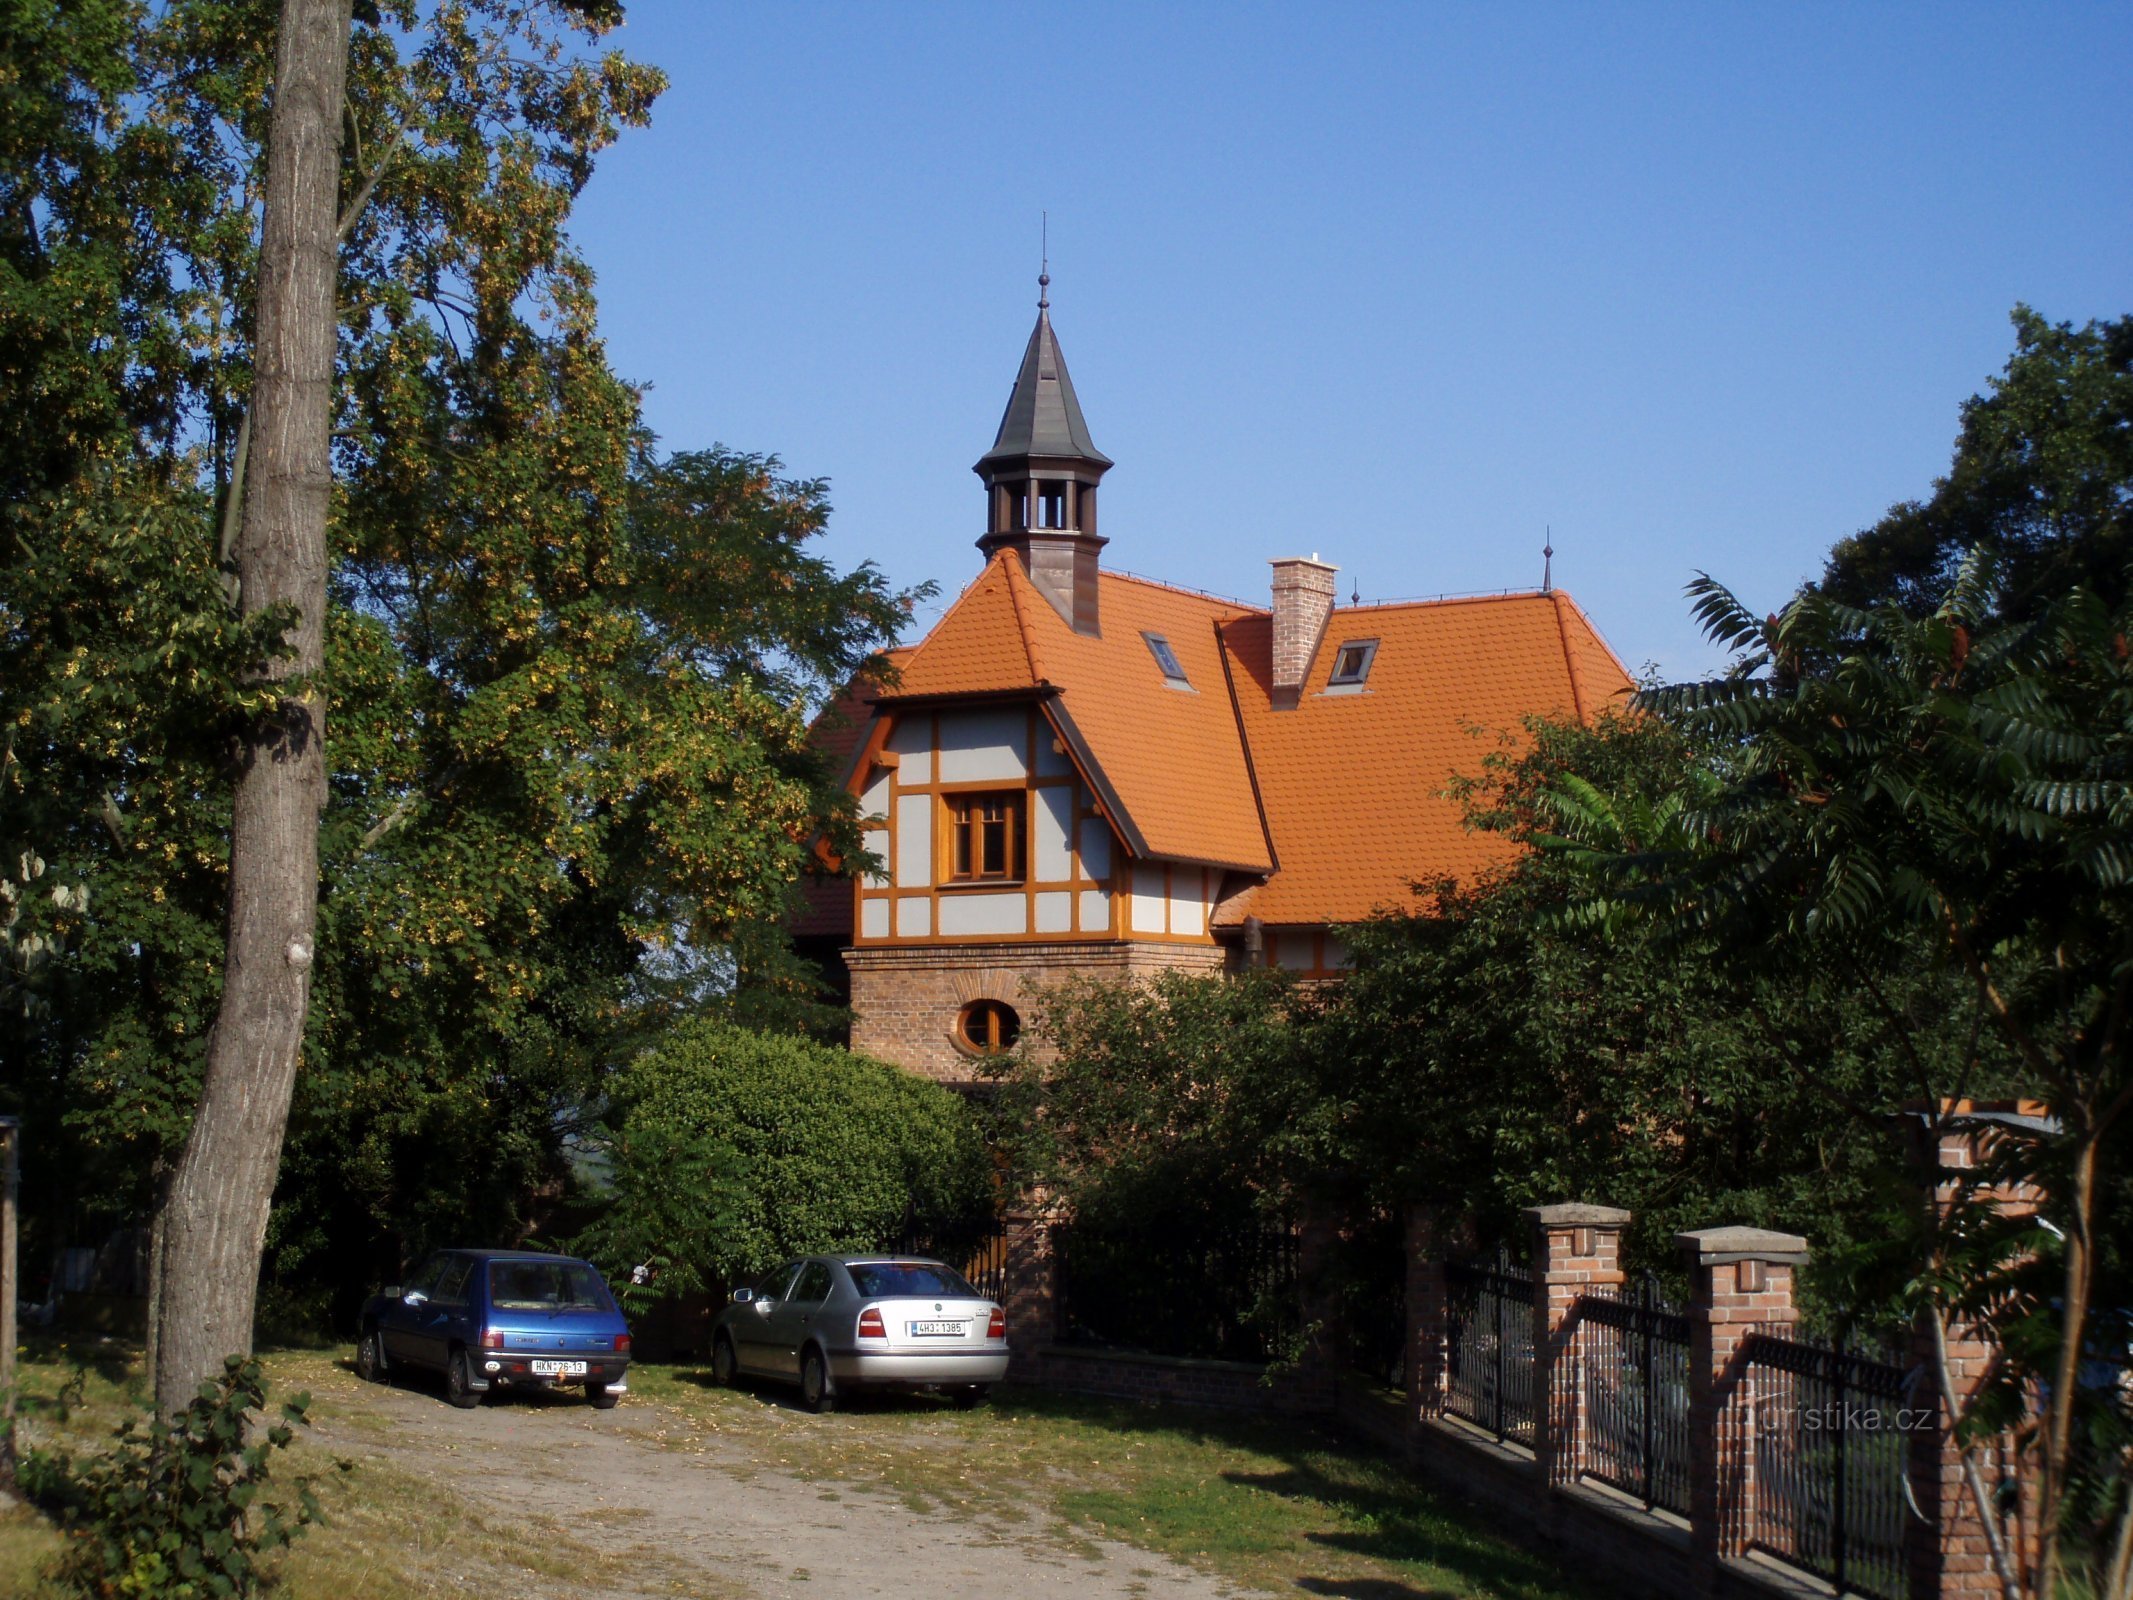 Dvorac br. 440 (Hradec Králové, 28.8.2009.)